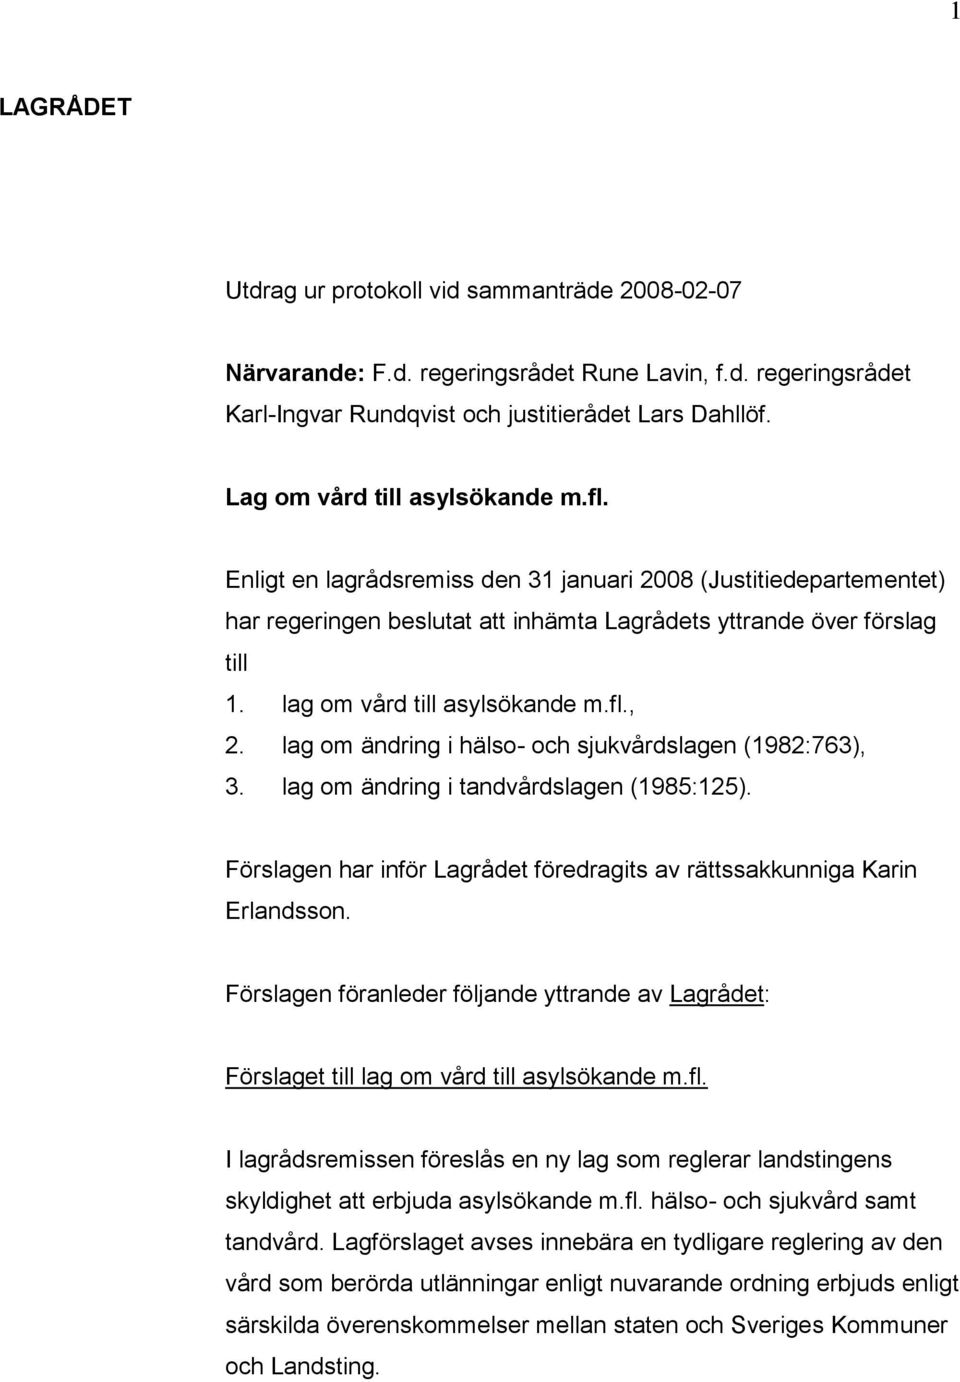 lag om vård till asylsökande m.fl., 2. lag om ändring i hälso- och sjukvårdslagen (1982:763), 3. lag om ändring i tandvårdslagen (1985:125).